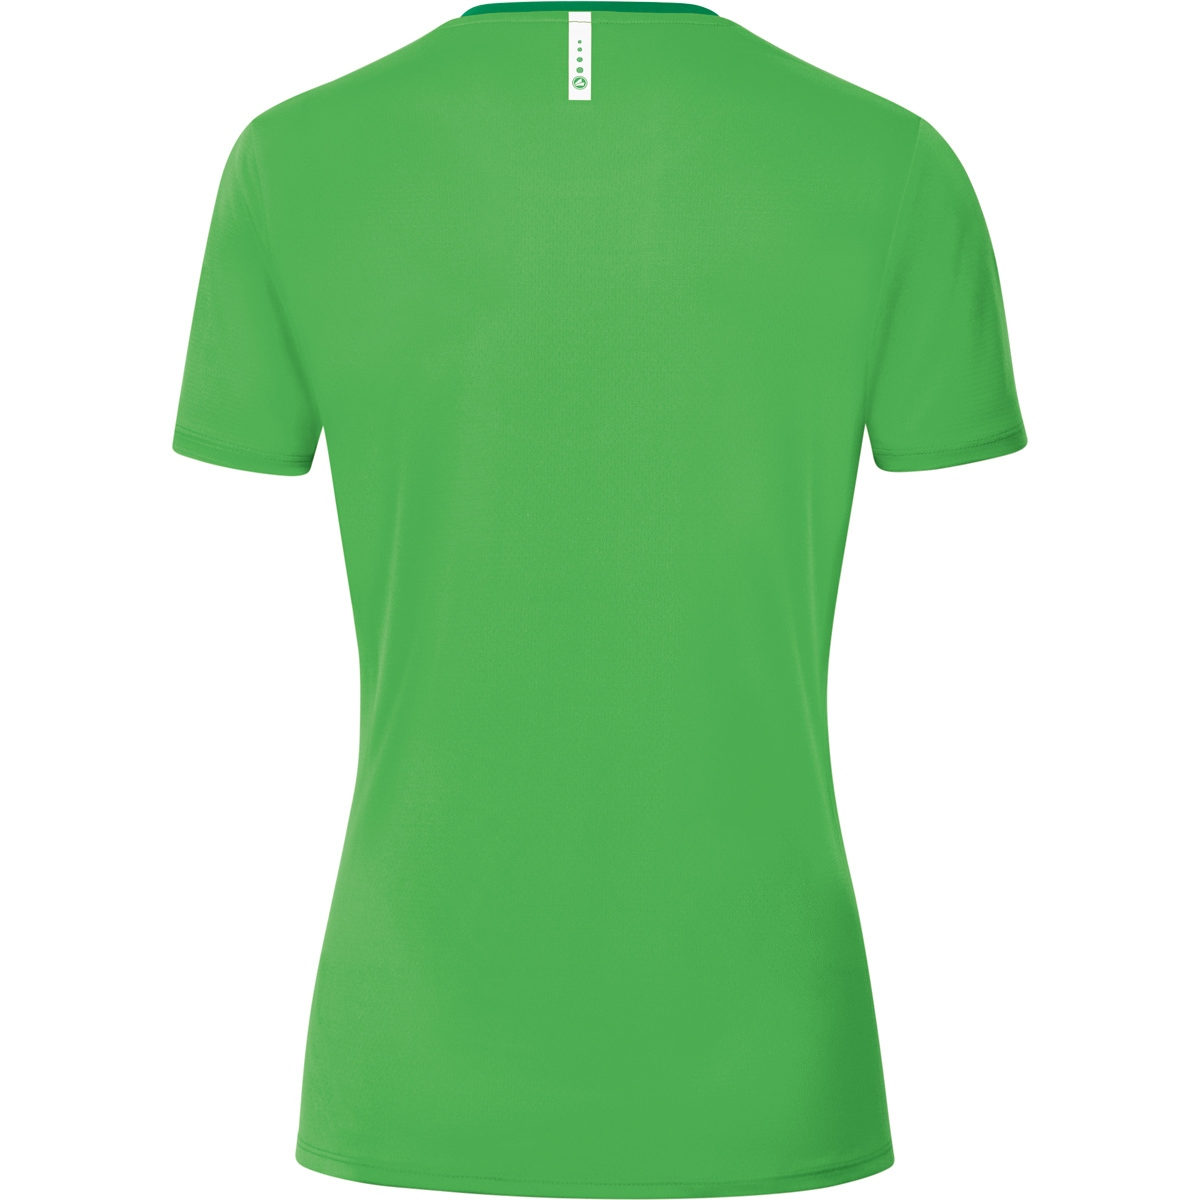 JAKO T-Shirt Champ soft Damen, green/sportgrün, Gr. 6120 2.0 38